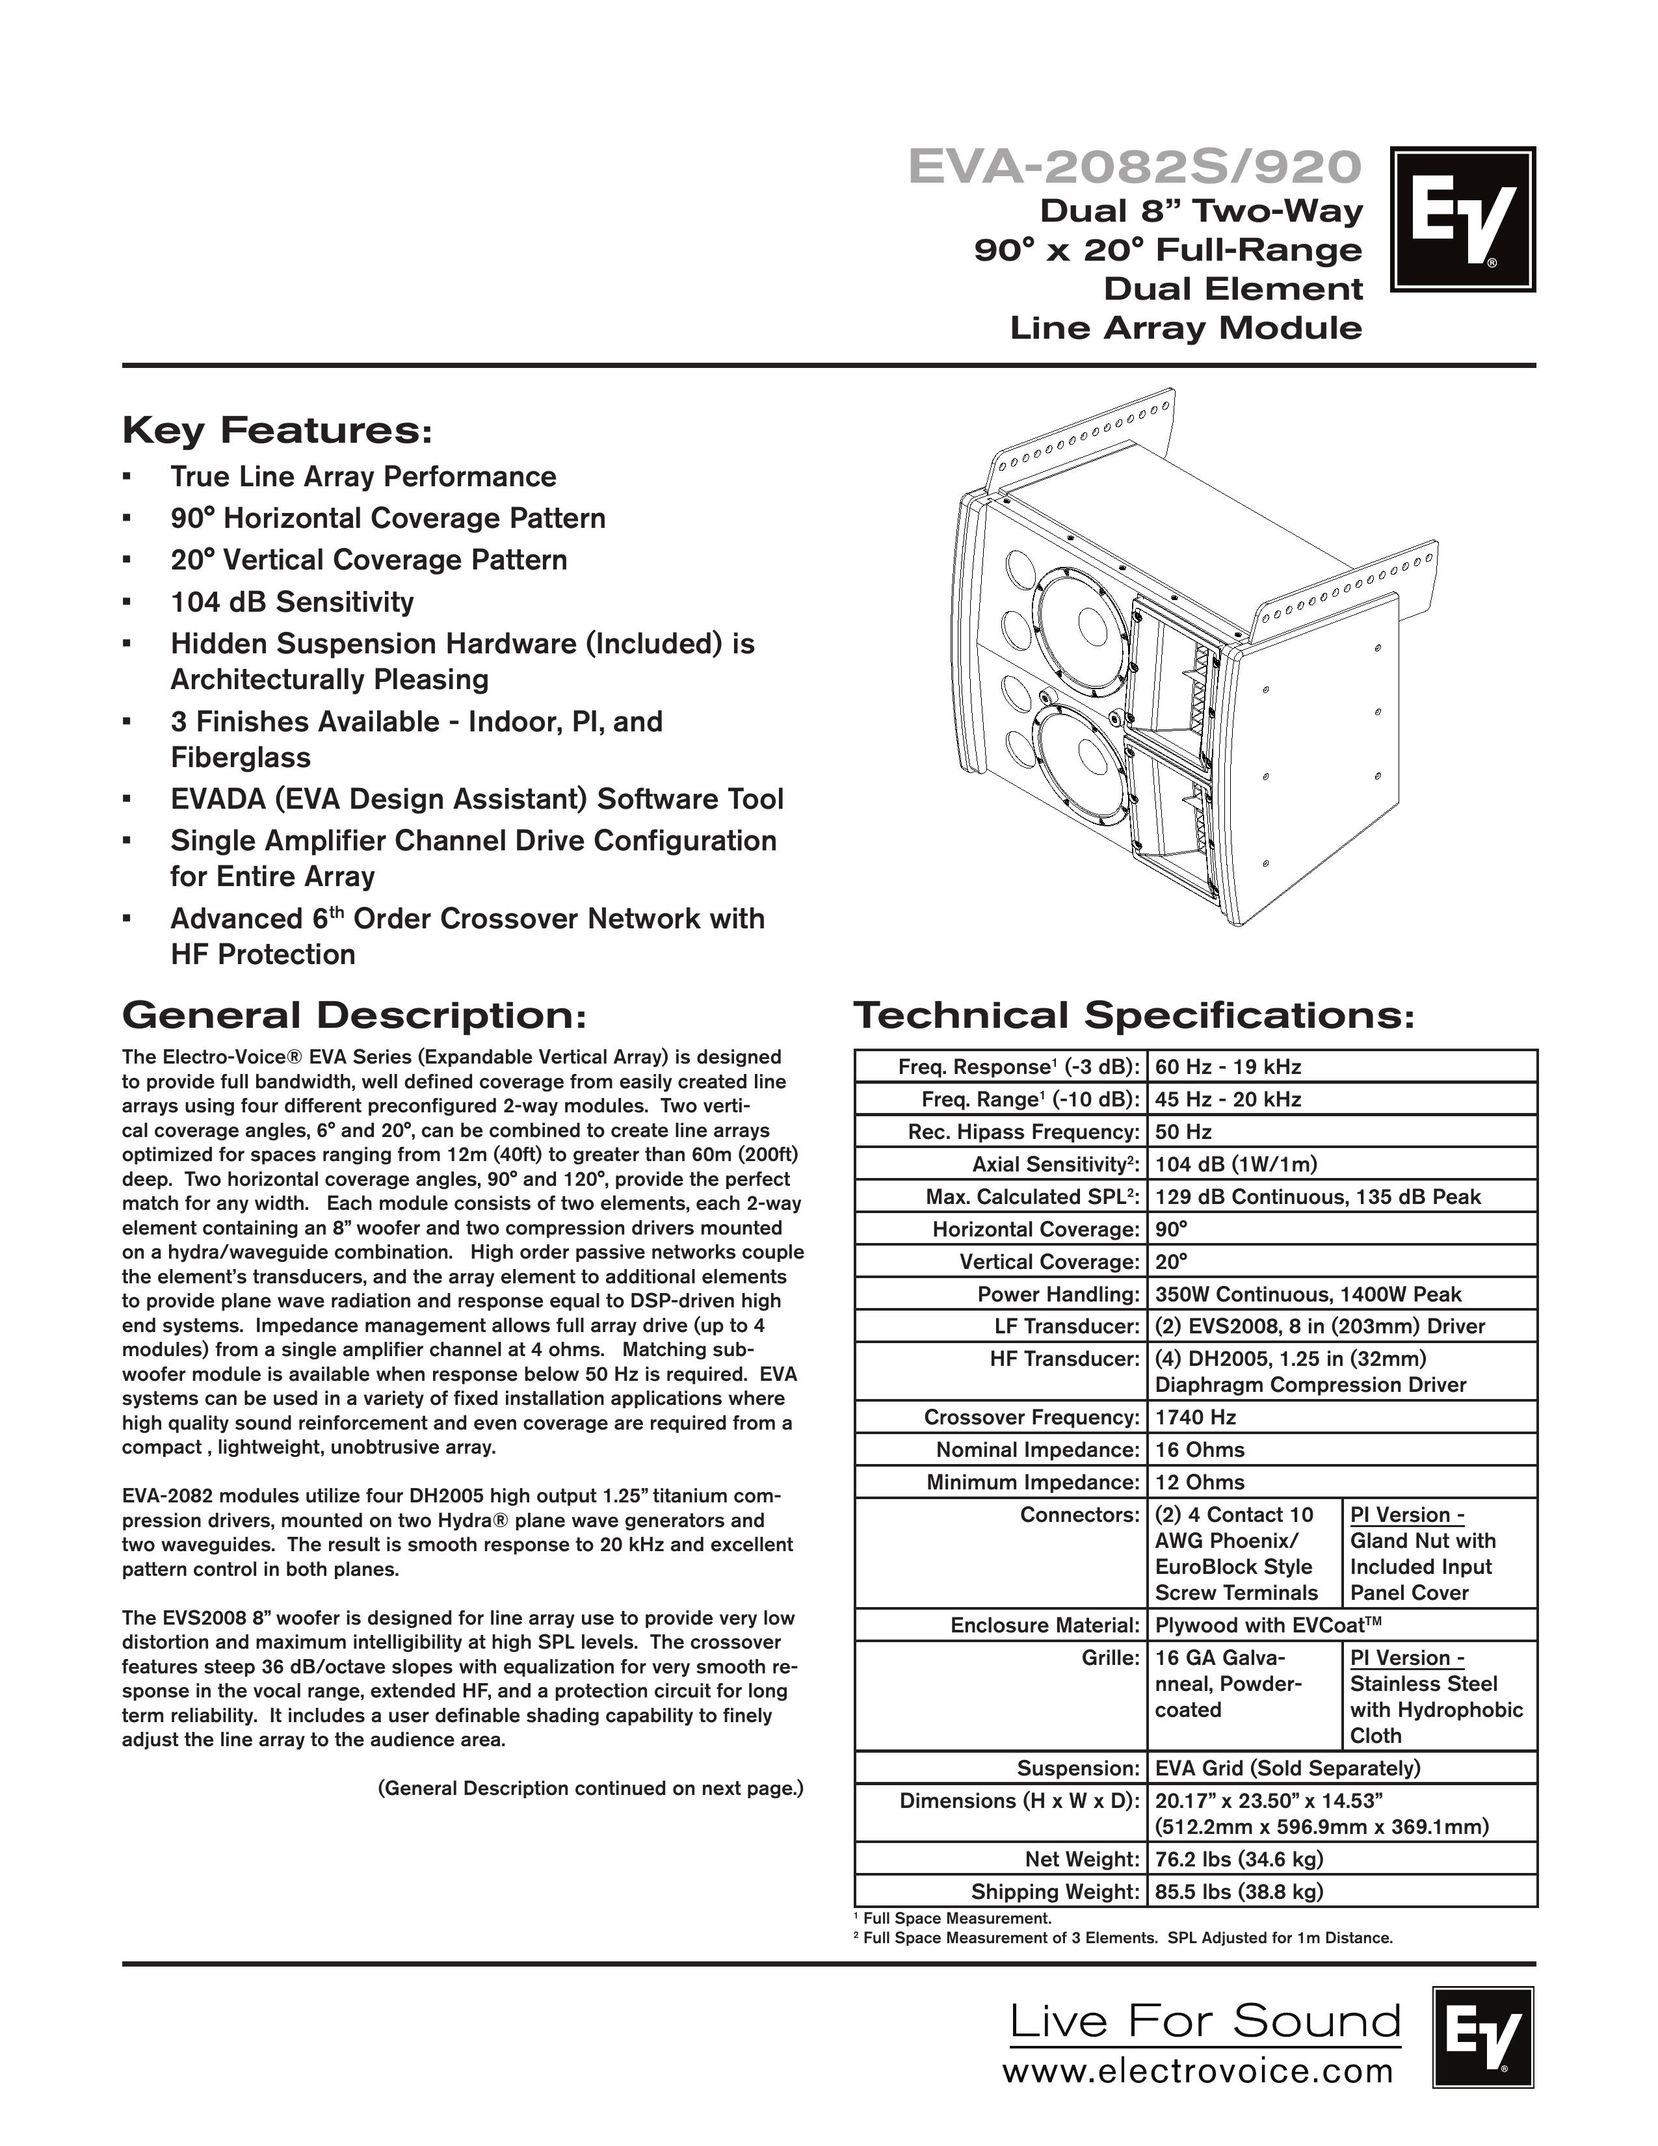 Electro-Voice EVA-2082S/920 Speaker System User Manual